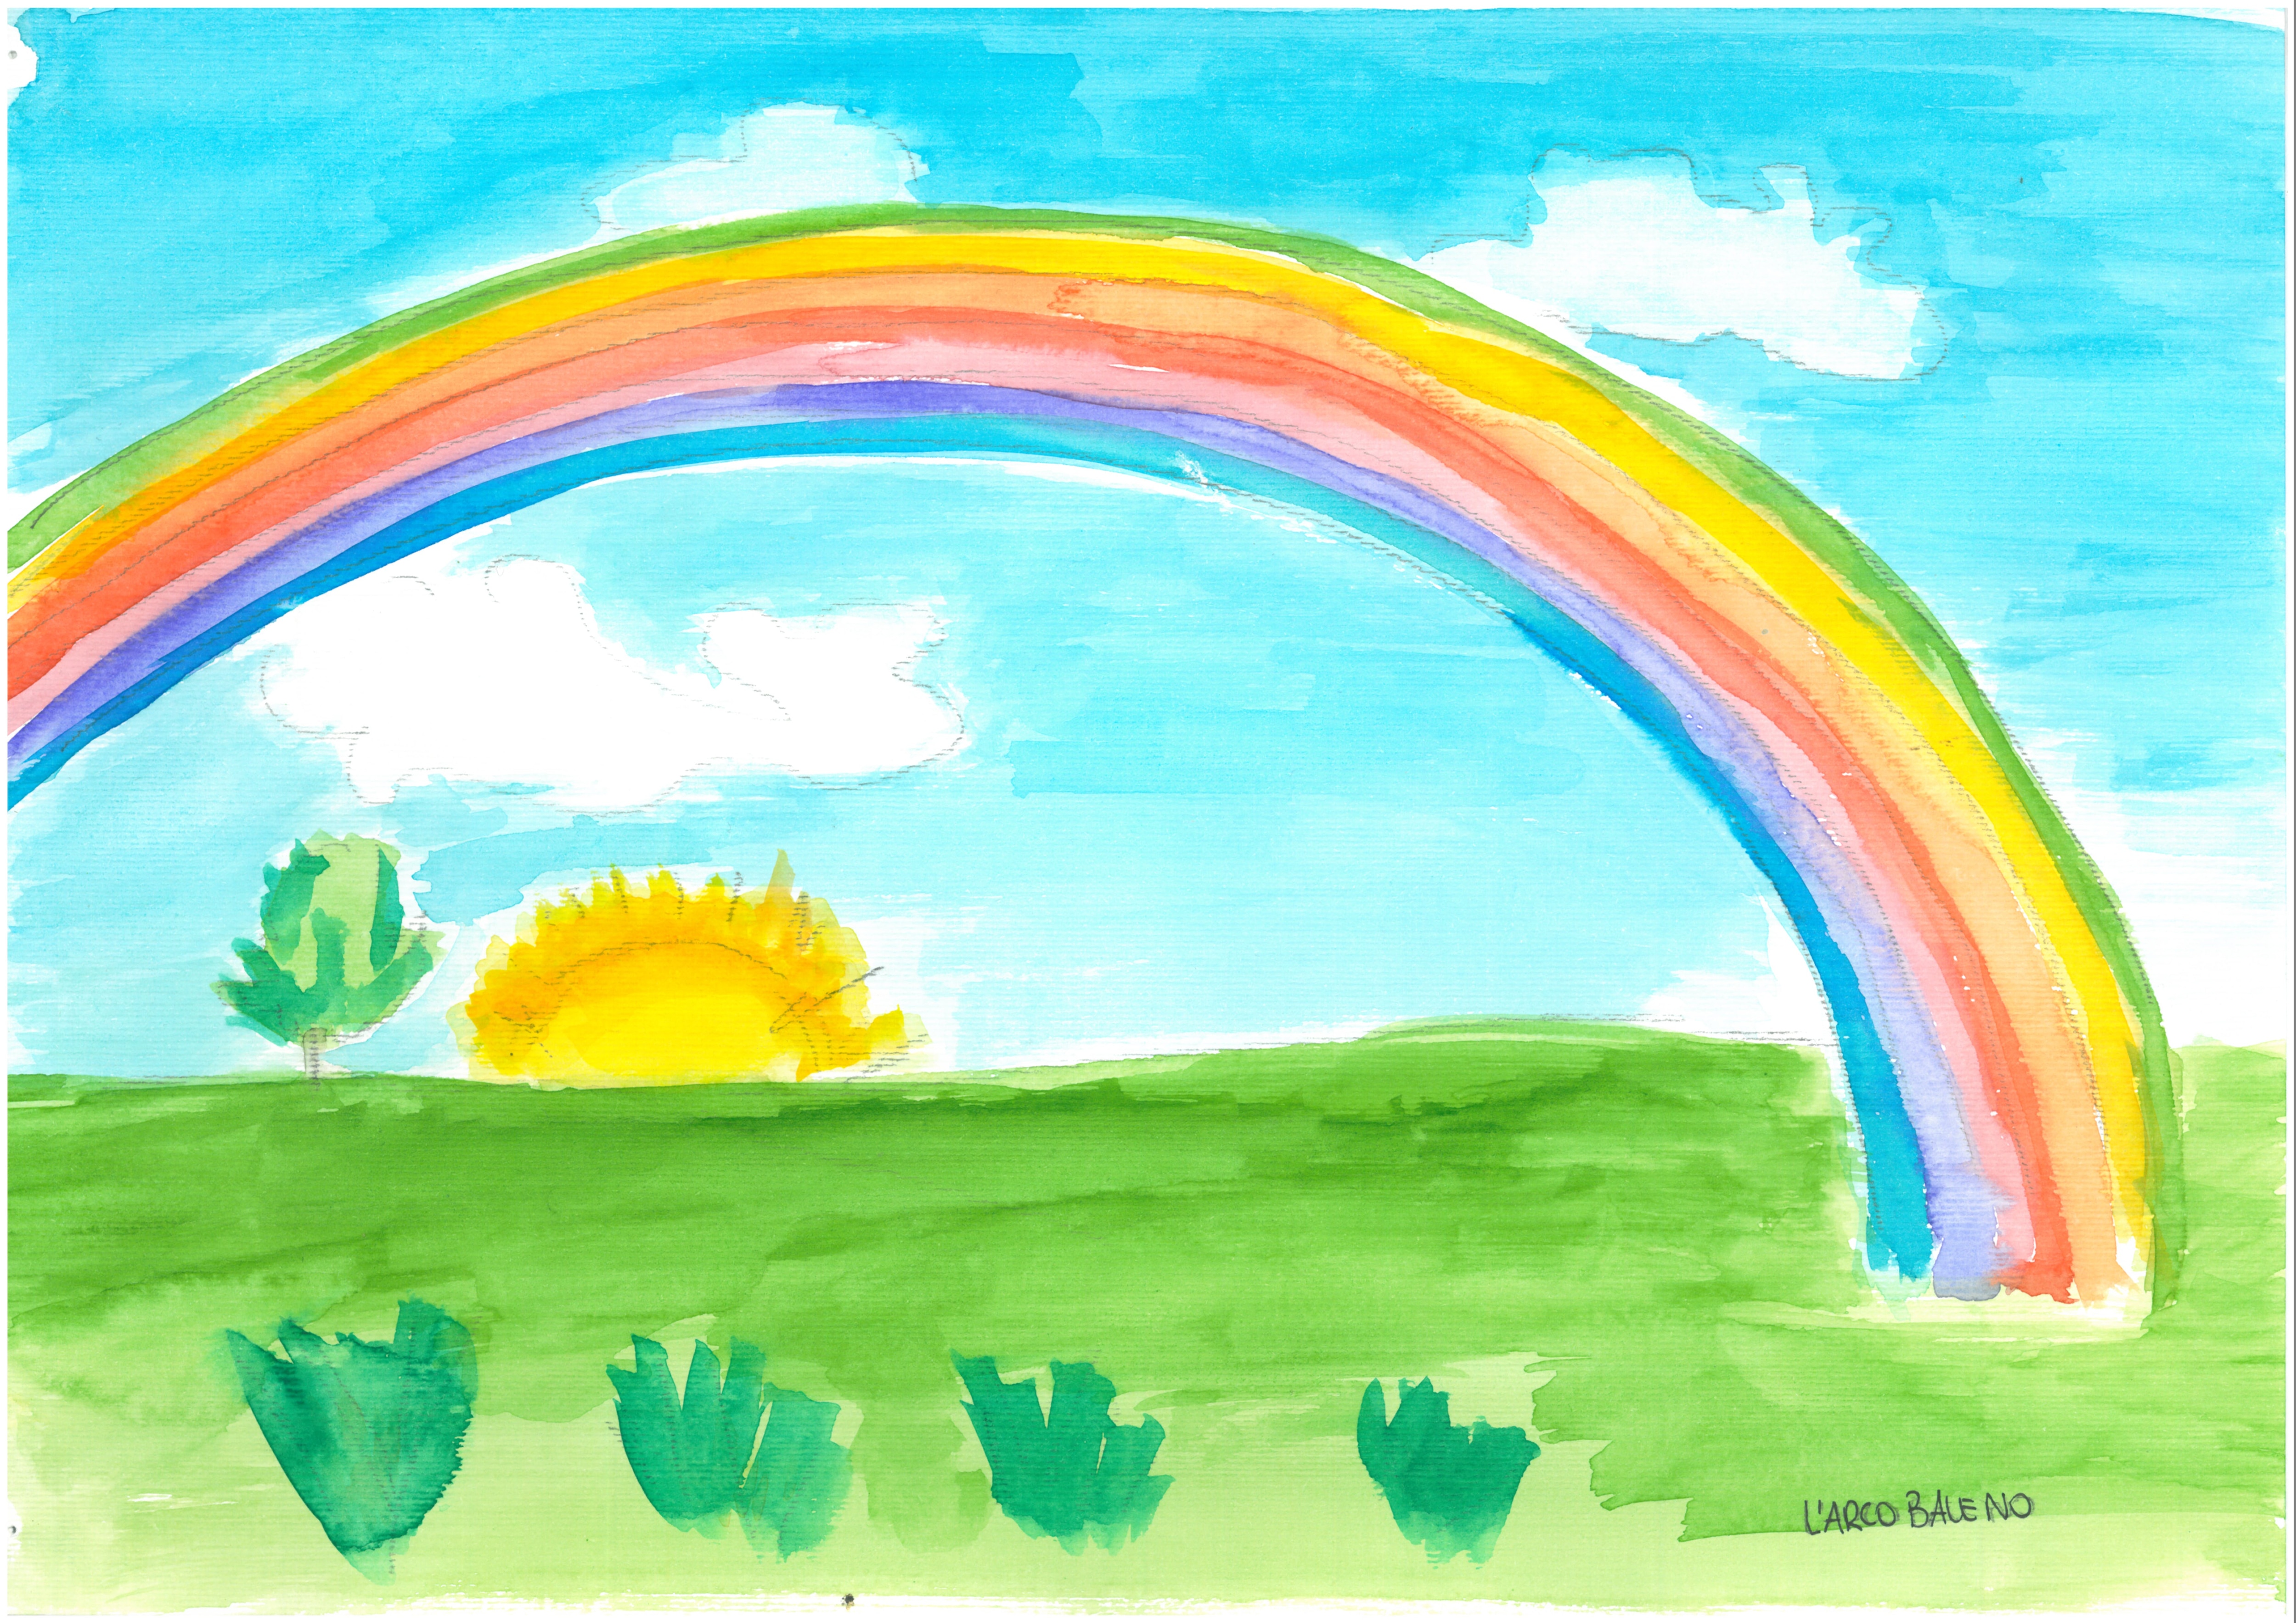 Un arcobaleno si estende nel cielo azzurro macchiato da poche nuvolette bianche, al di sopra di un prato verde. All'orizzonte fa capolino mezza sfera di Sole, con i suoi raggi dorati.